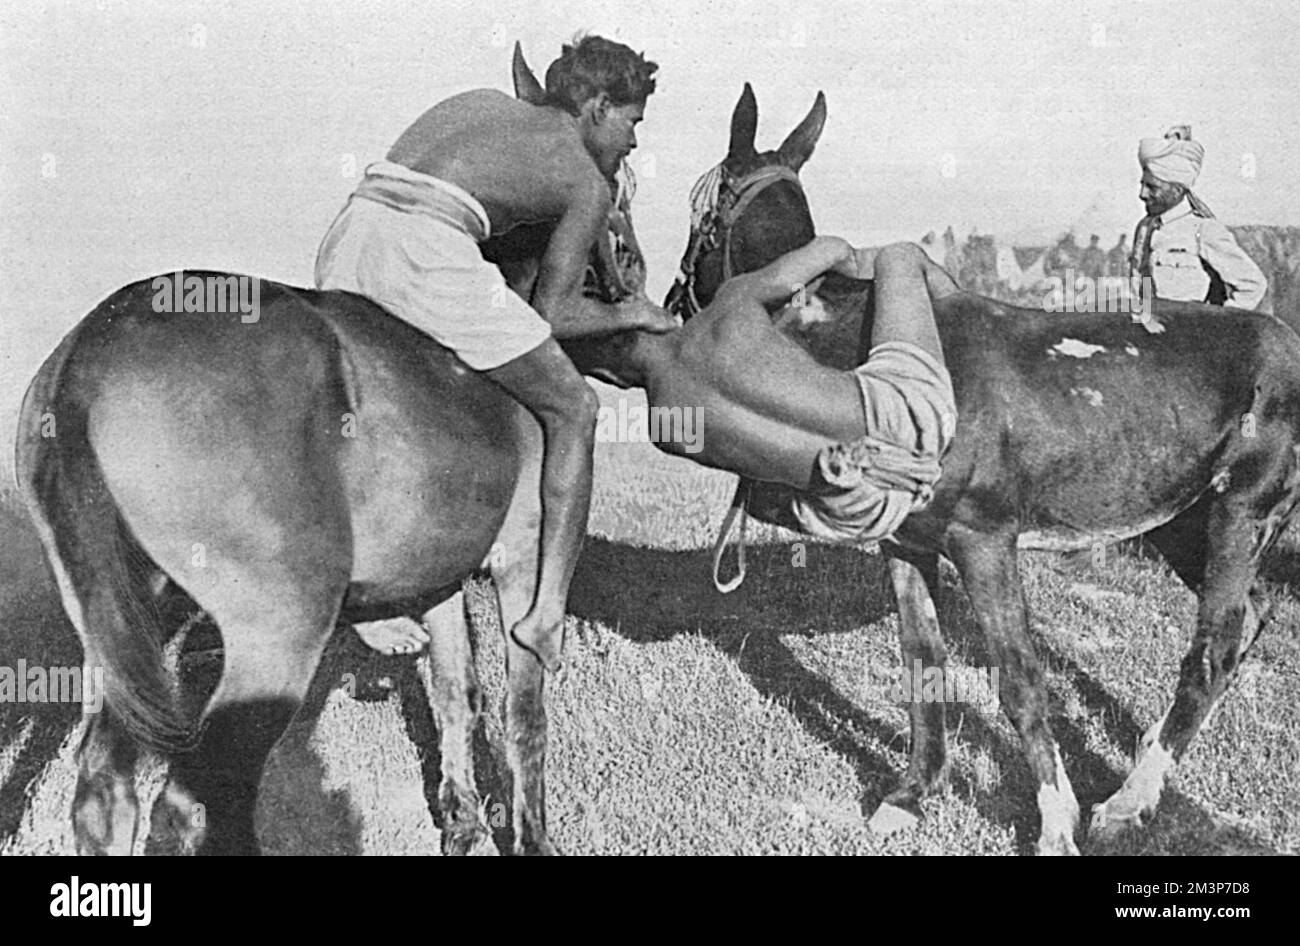 Una partita di wrestling mentre cavalcano muli - truppe indiane in un incontro sportivo tenutosi a Salonicco durante la prima guerra mondiale. Data: 1916 Foto Stock